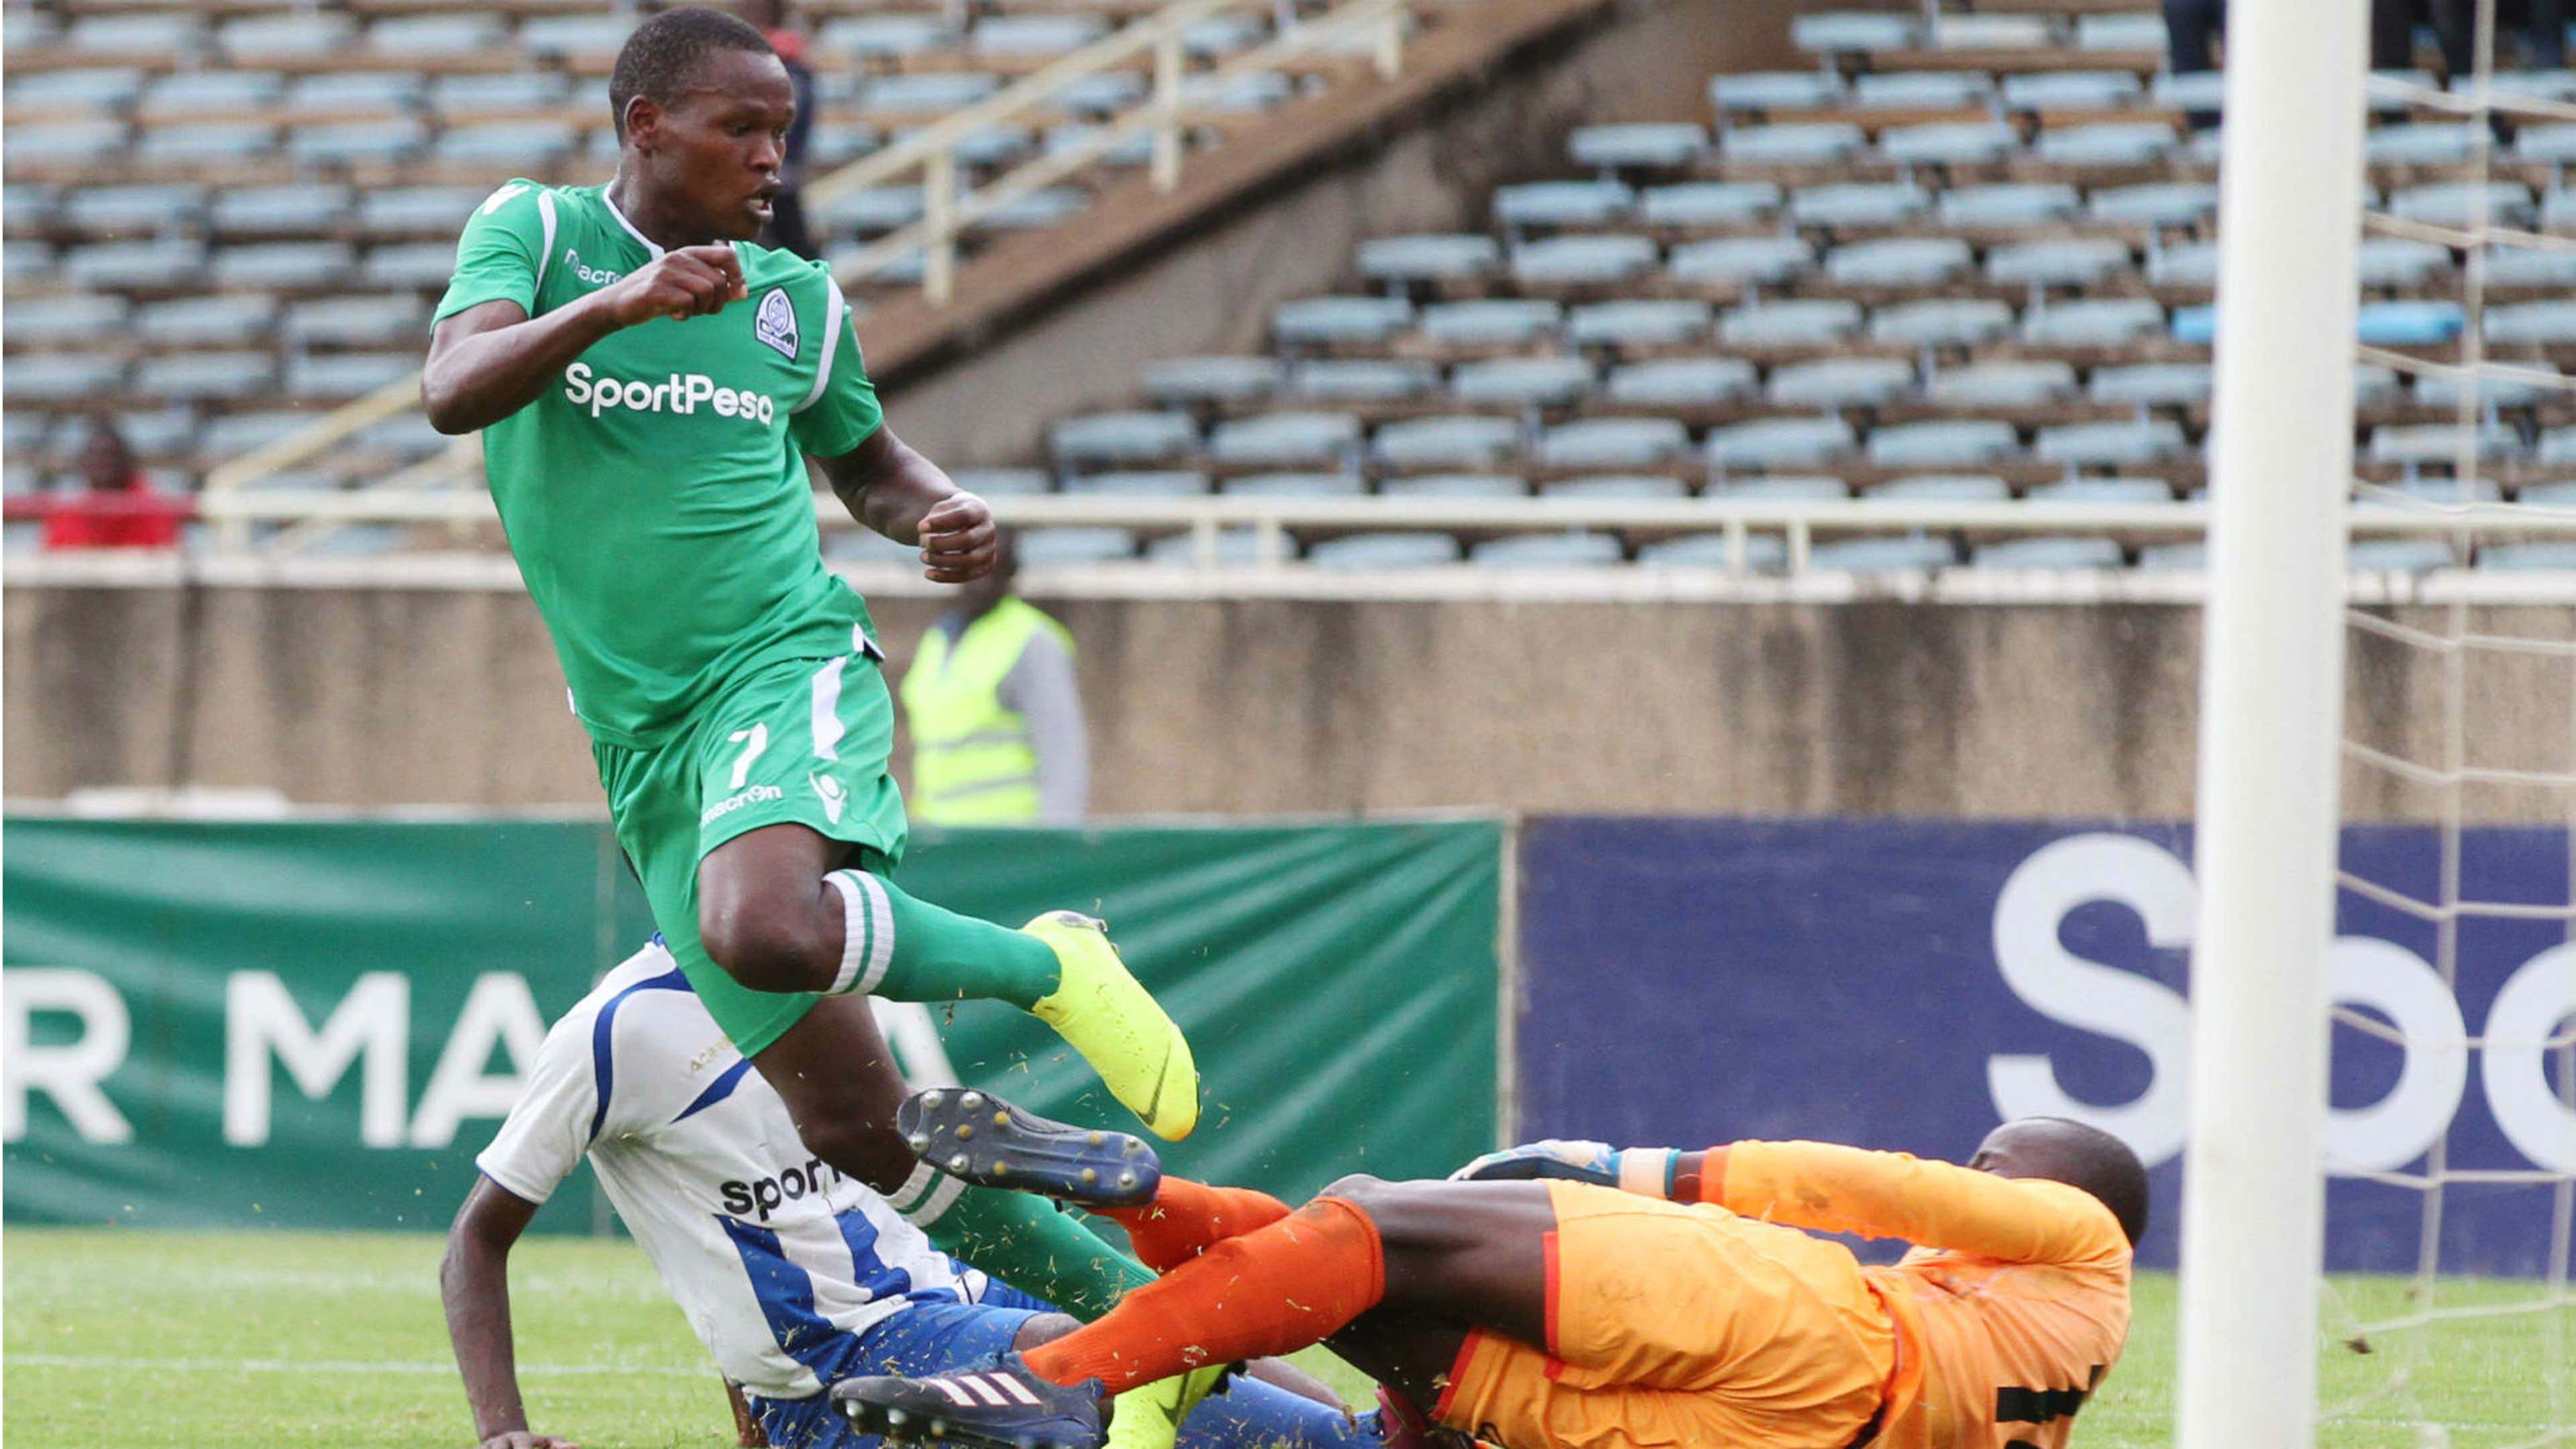 Nicholas Kipkirui of Gor Mahia scores past Ezekiel Owade of AFC Leopards.